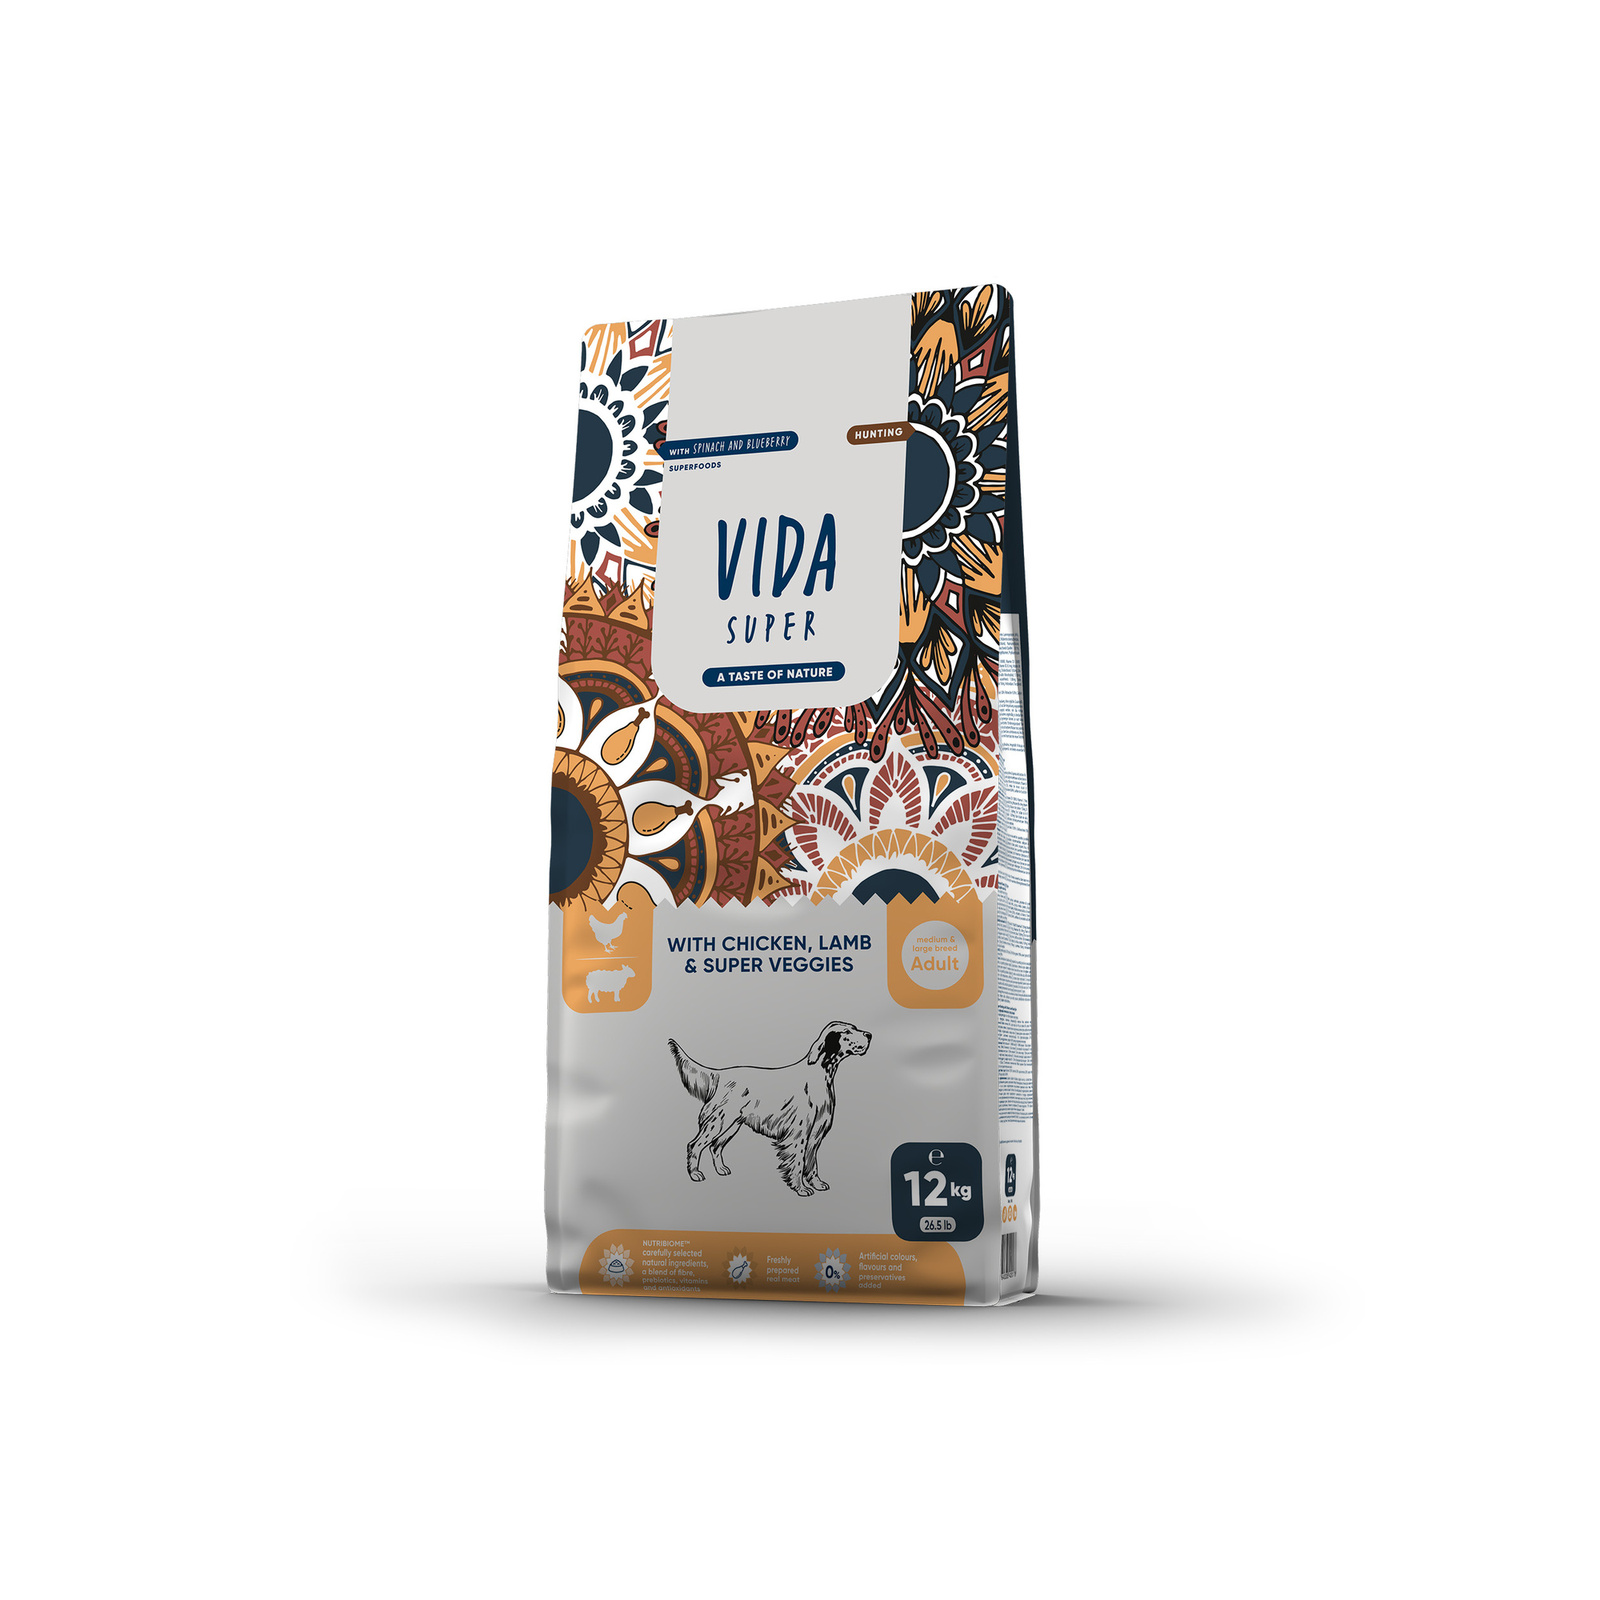 VIDA Super VIDA Super корм для взрослых собак средних и крупных пород с курицей, ягненком и овощами (12 кг)